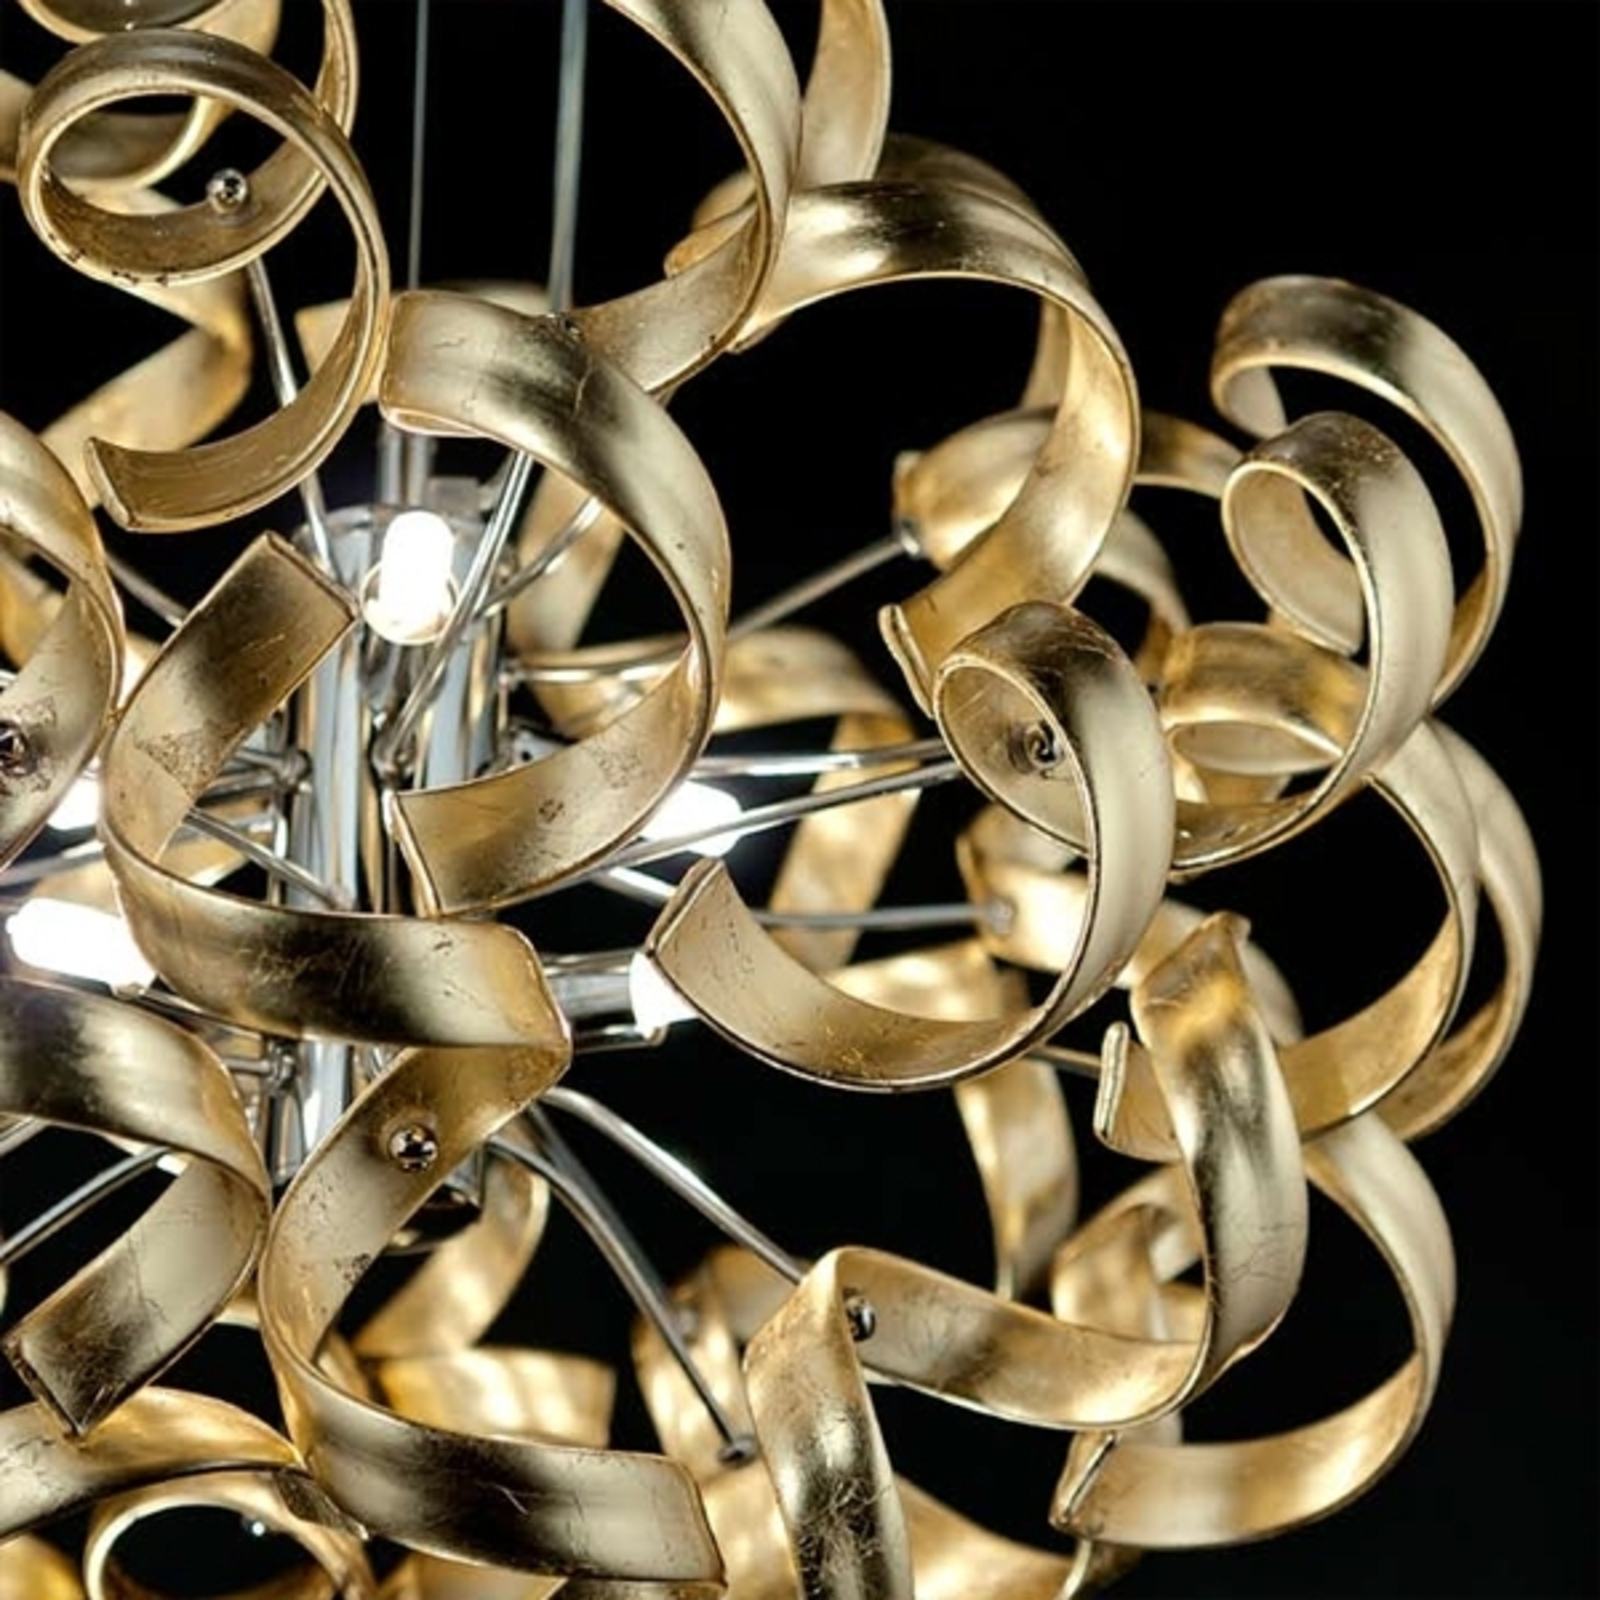 Lampă suspendată Gold, Ø 50 cm